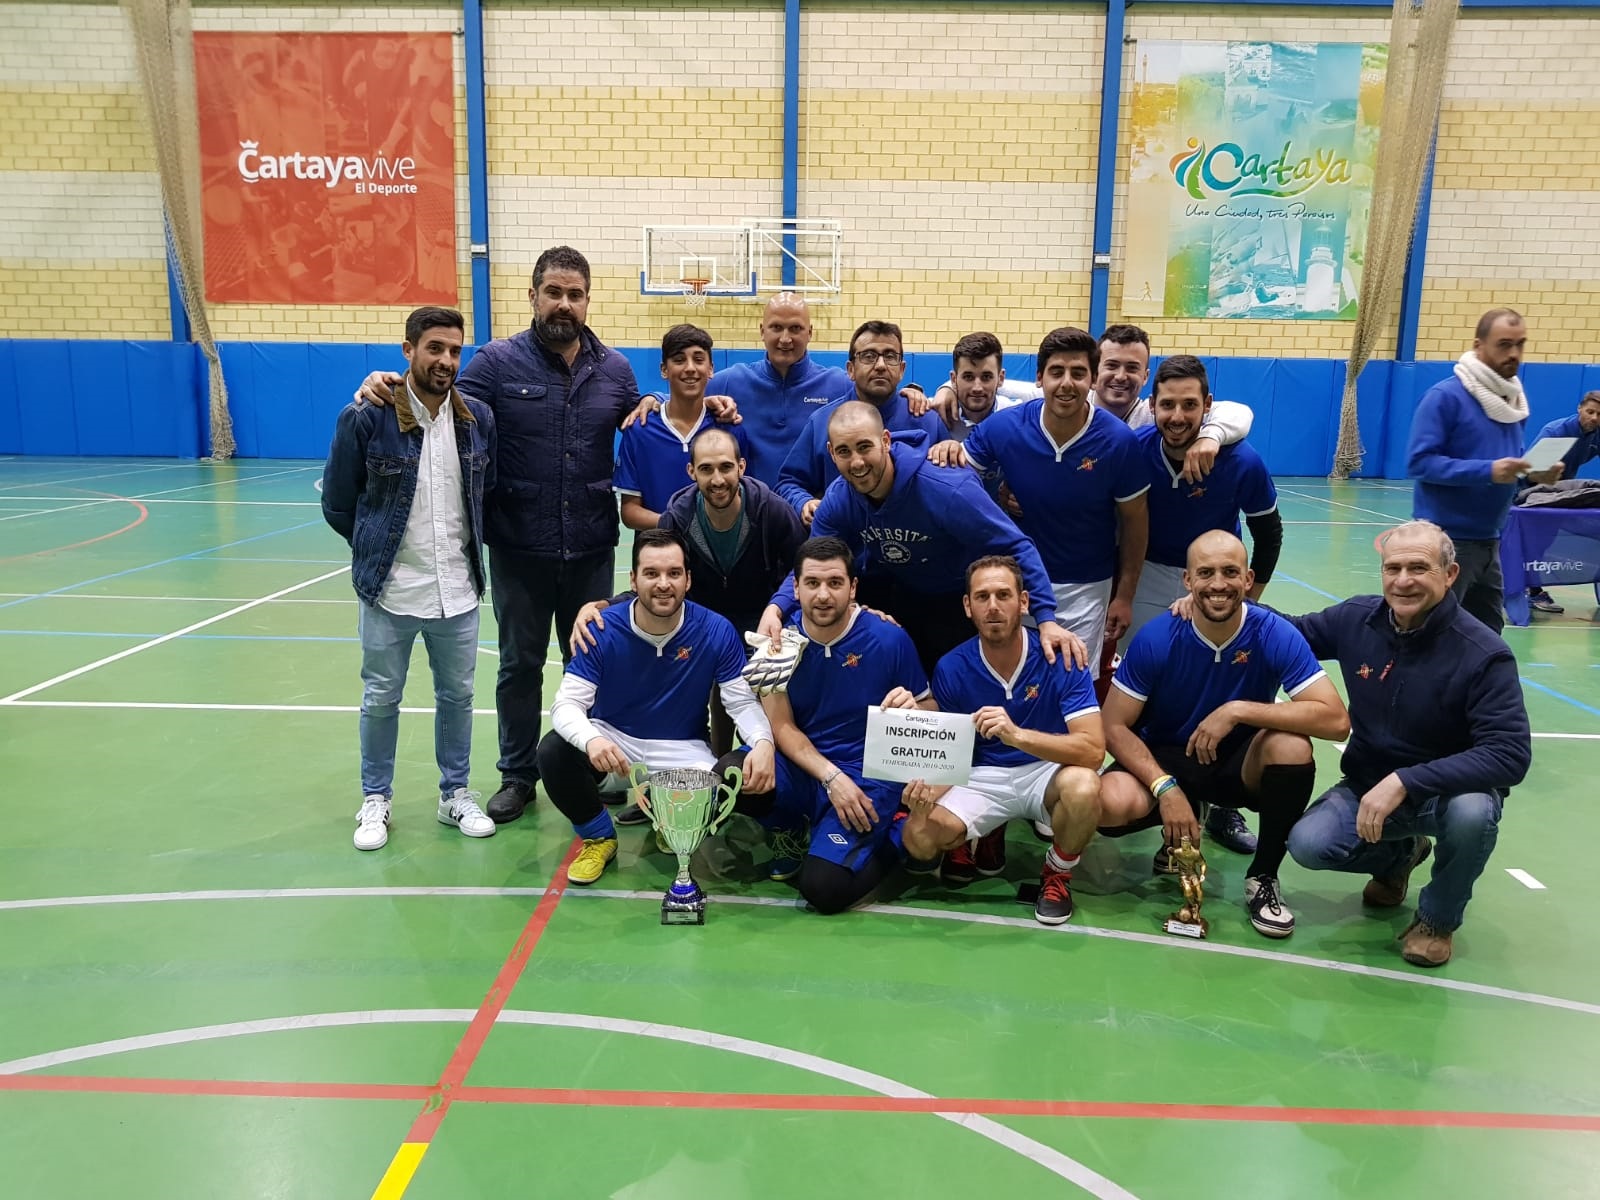 Equipo ganador del Campeonato de Invierno de Fútbol Sala 2018-2019